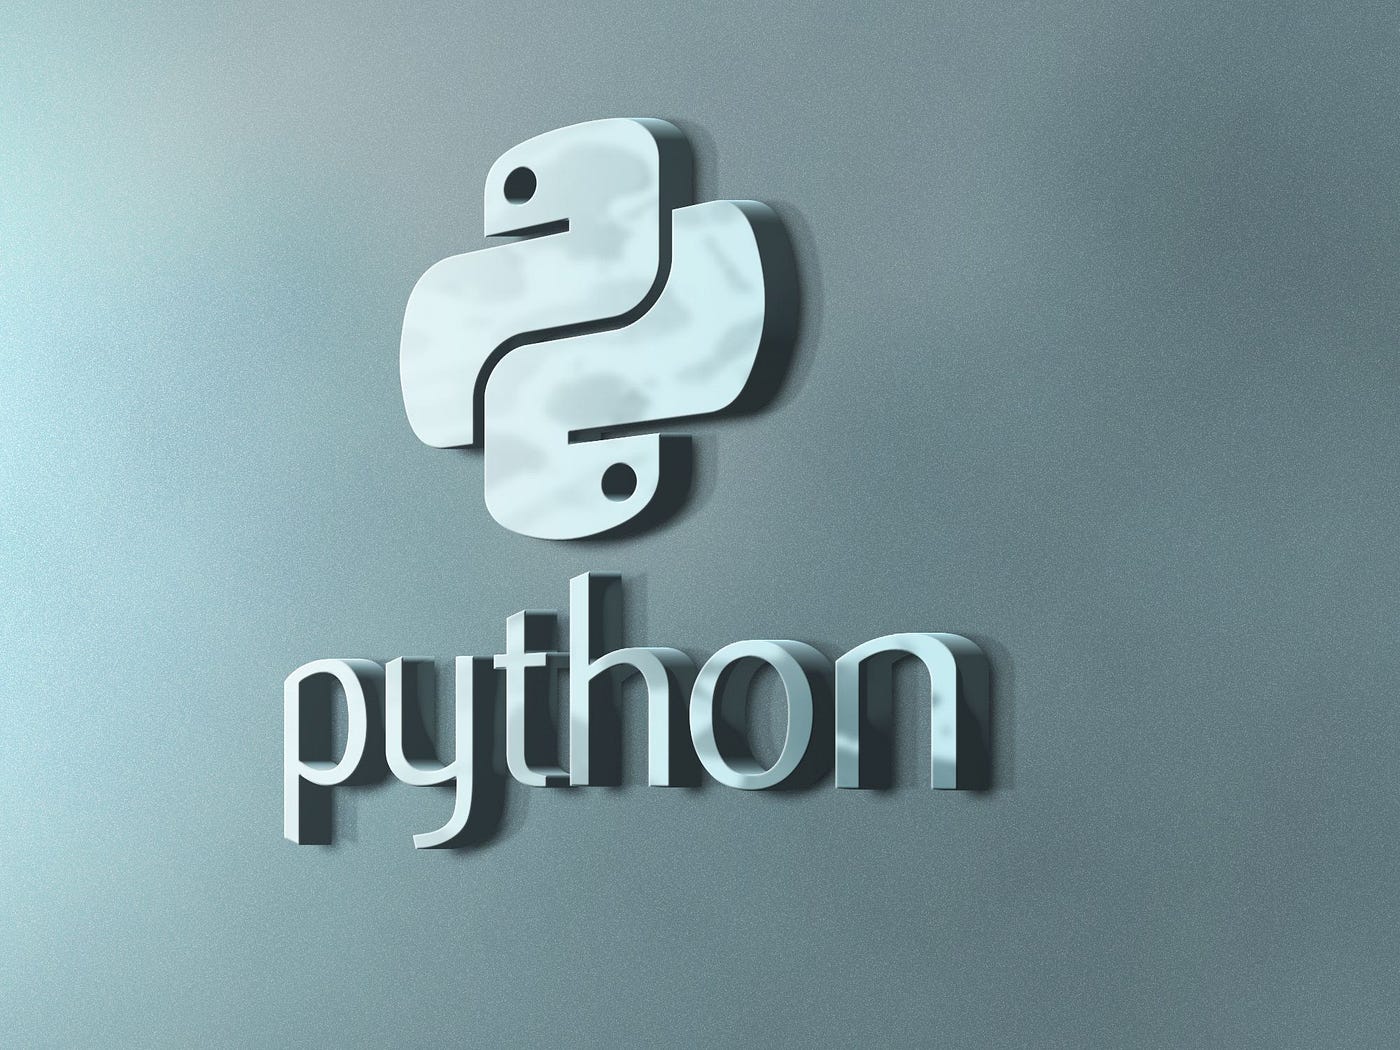 Python Operator Overloading - Python Geeks